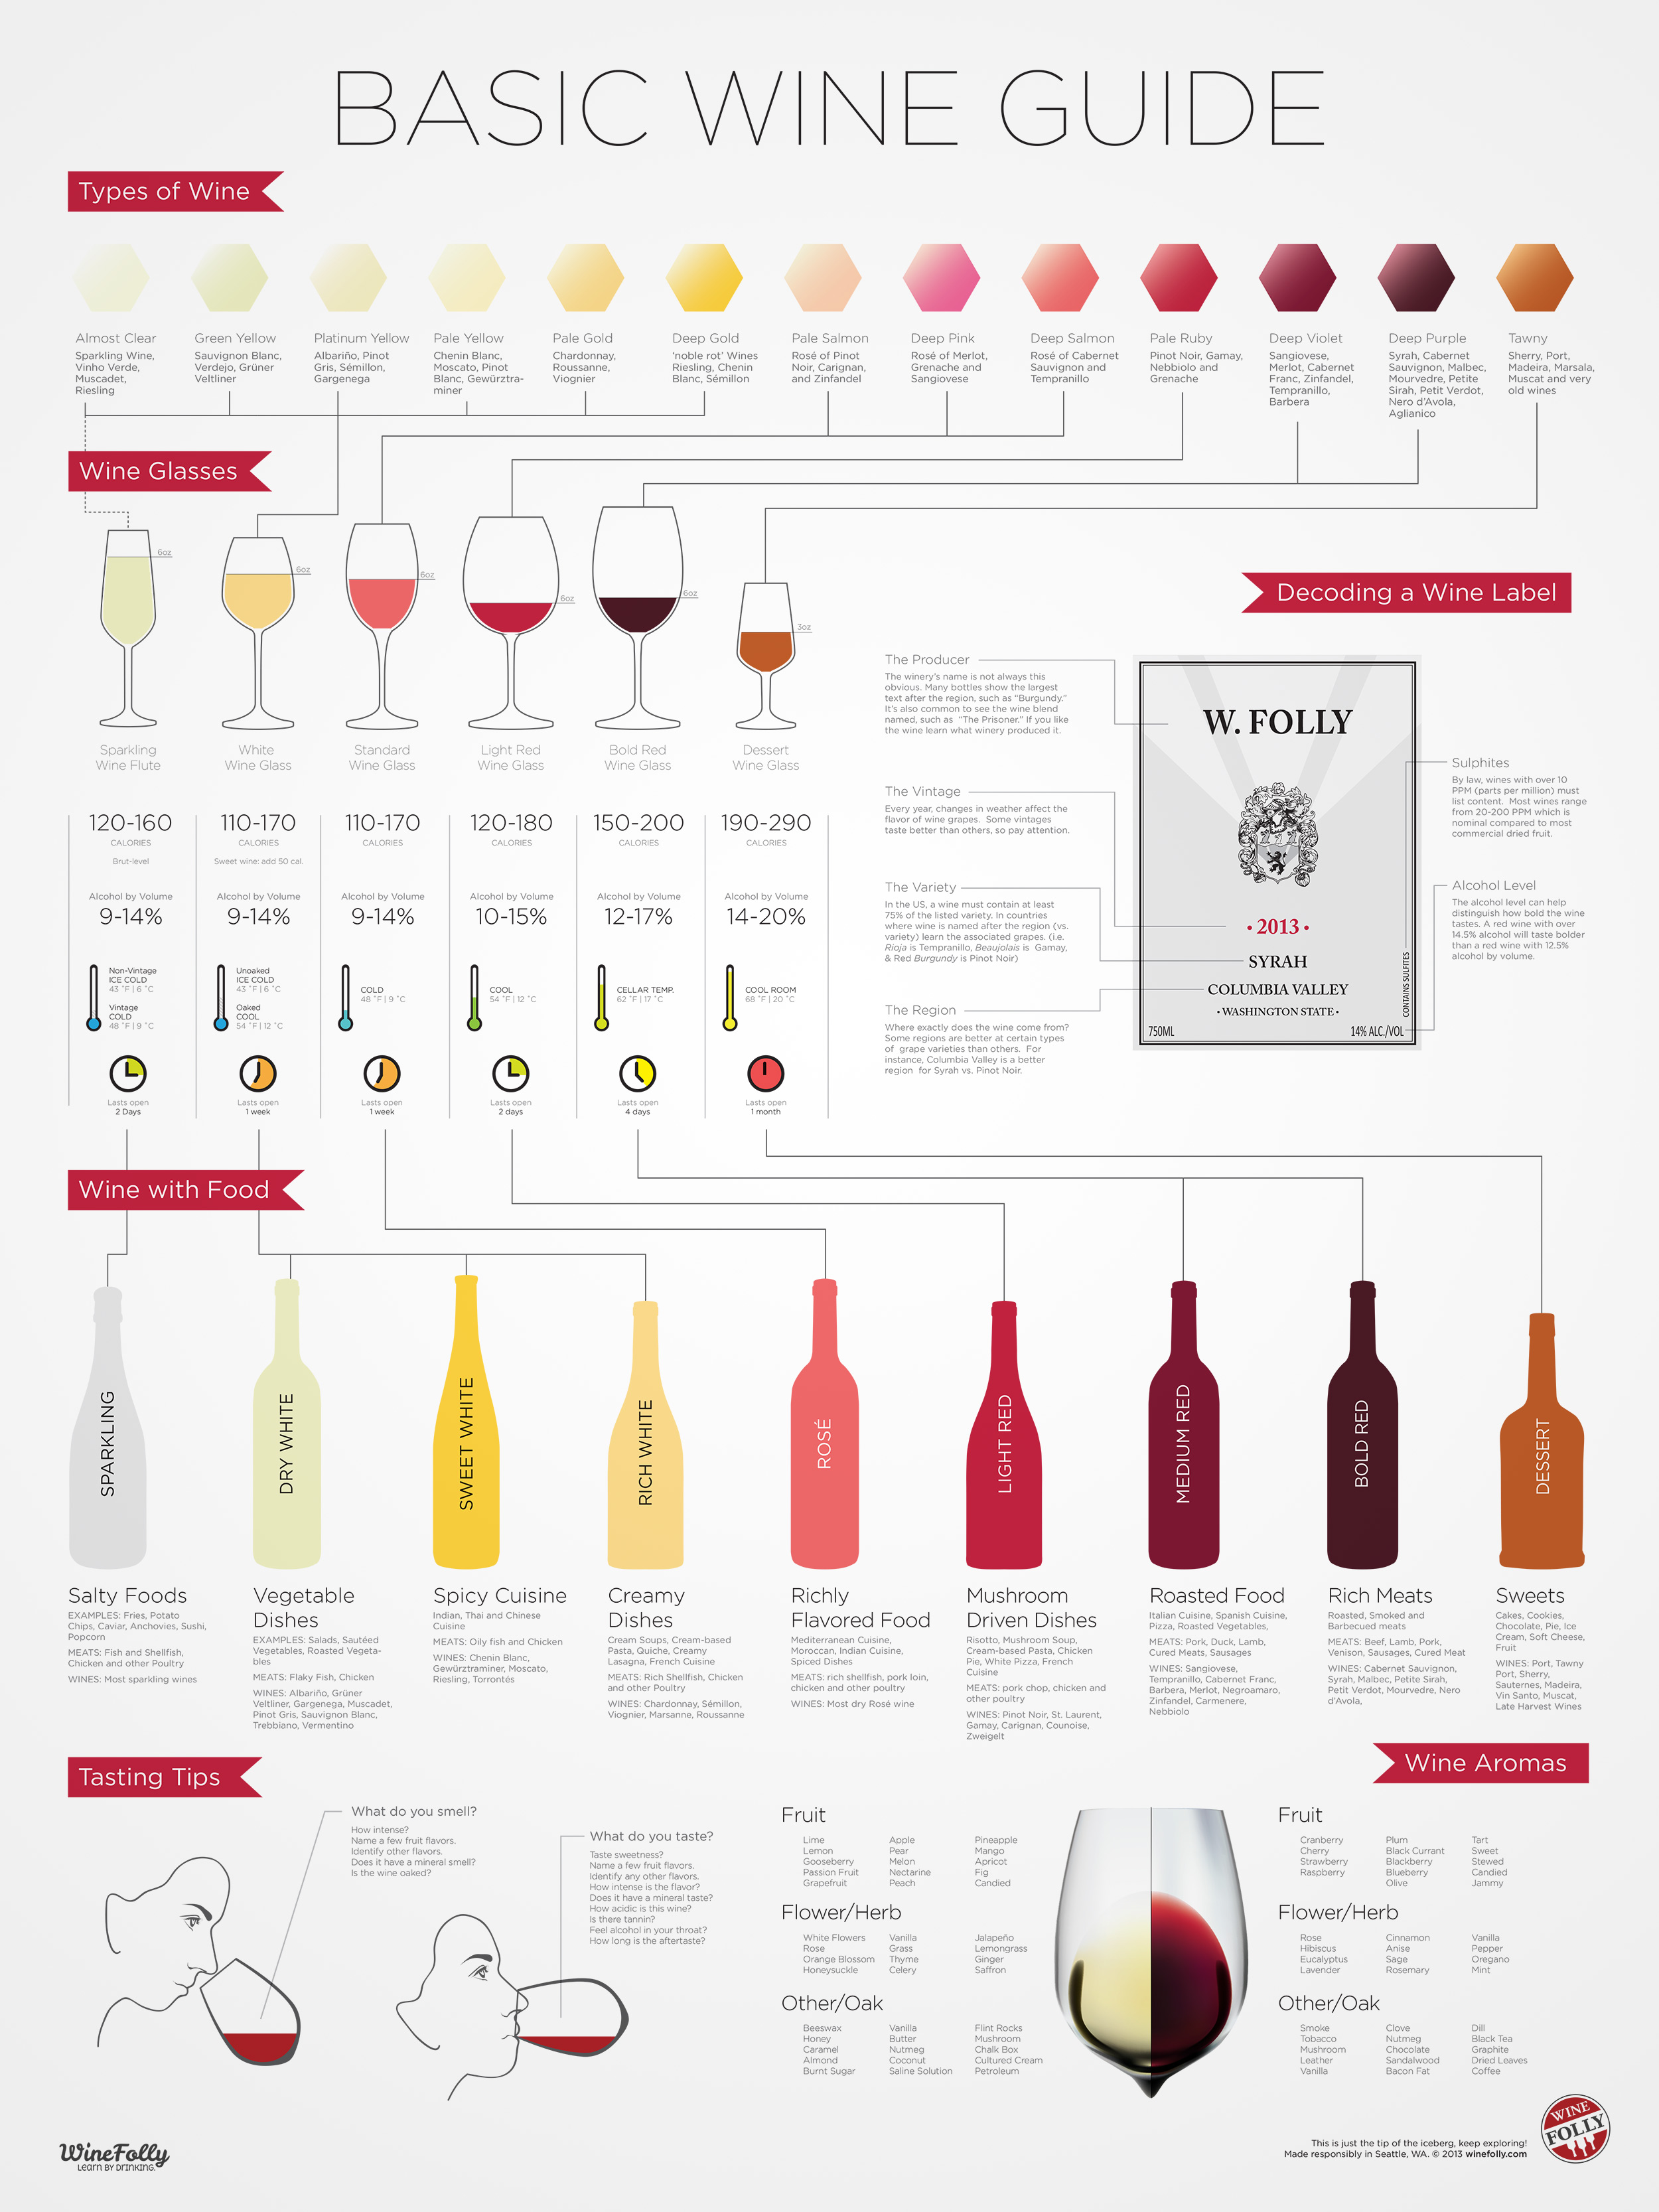 wine guide